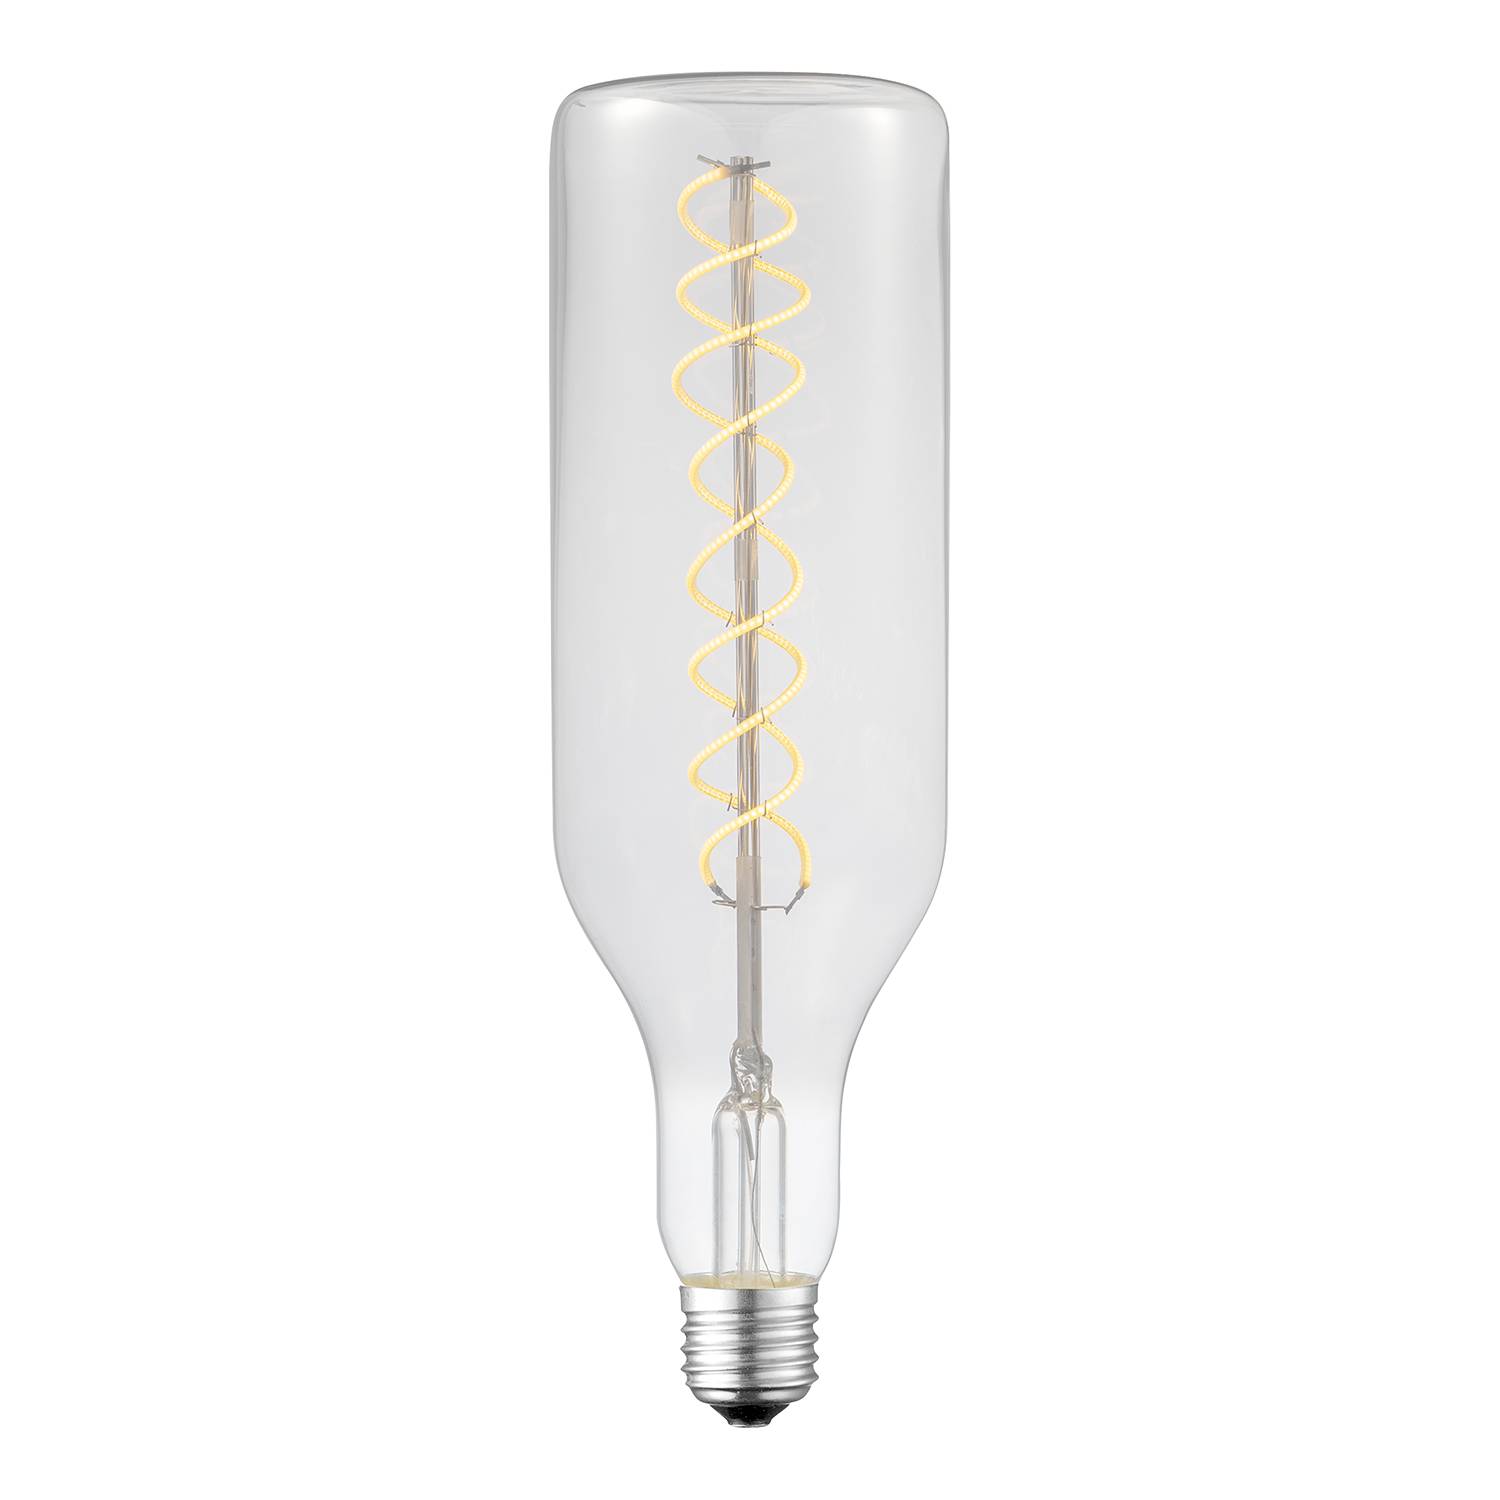 Home24 LED-lamp DIY XVII, Leuchten Direkt